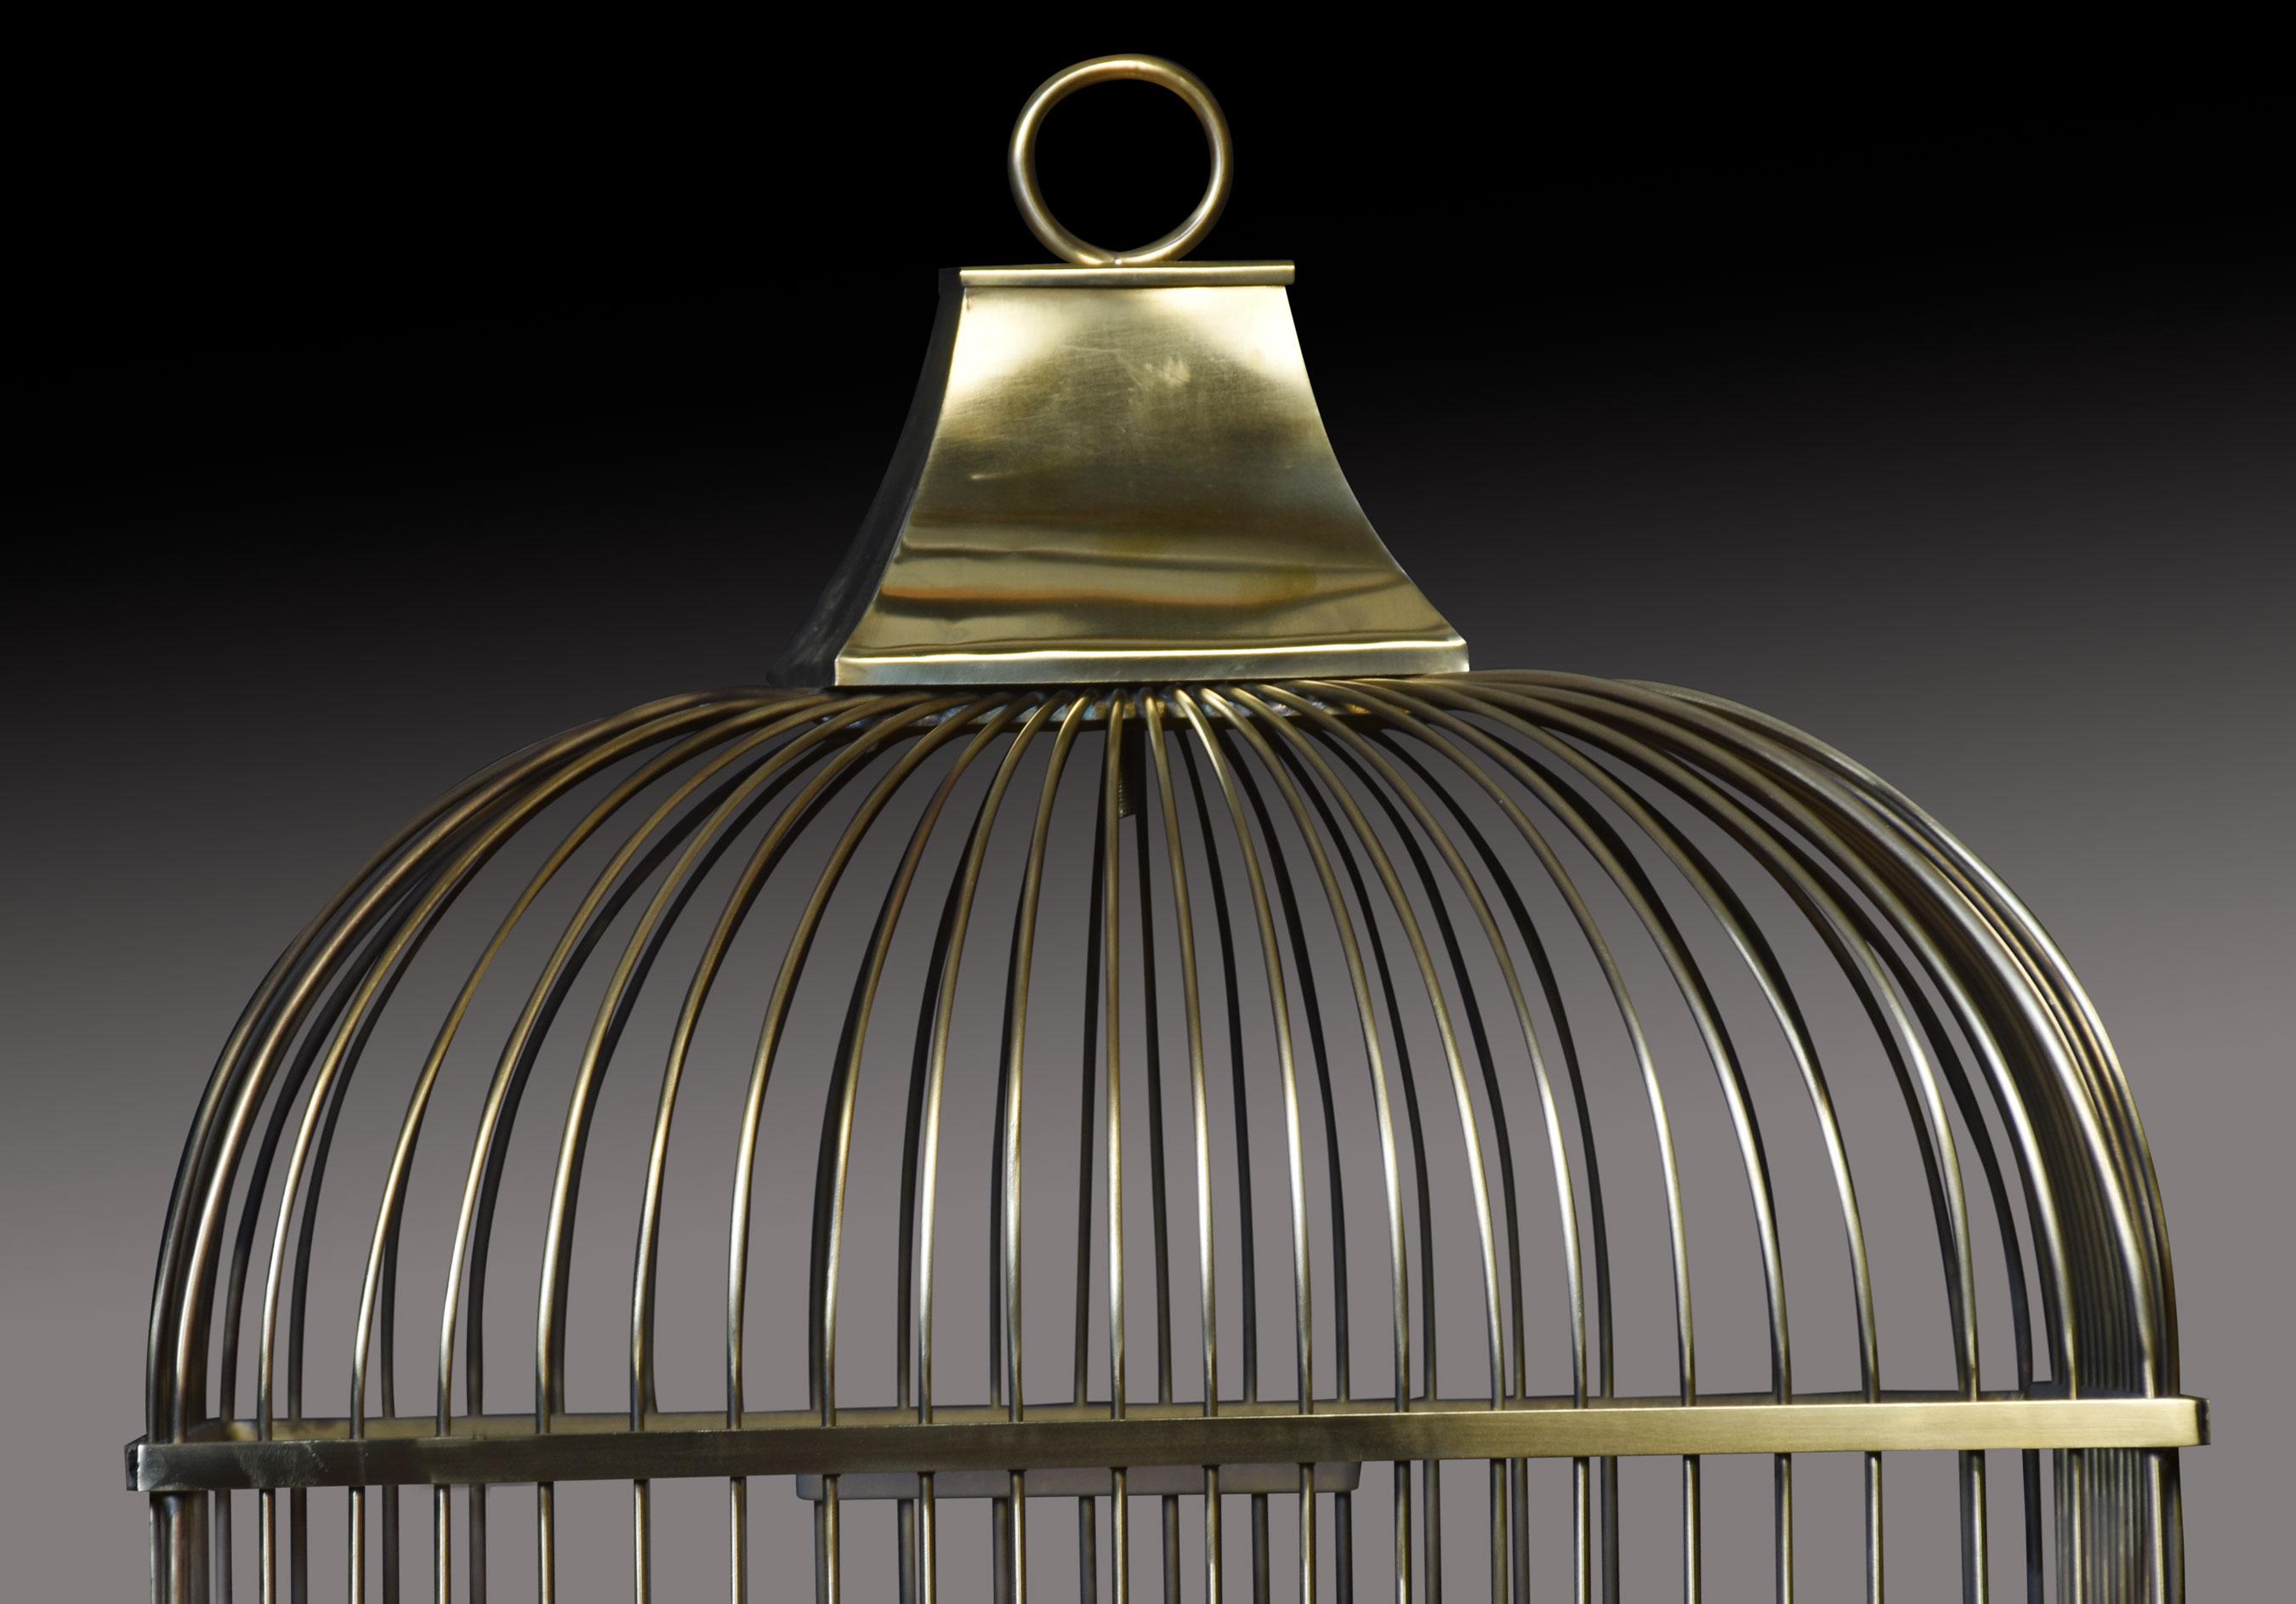 Cage à oiseaux du 19e siècle, de forme rectangulaire, avec dessus en grillage de laiton, mangeoires d'origine et base en laiton massif.
Dimensions
Hauteur 27.5 pouces
Largeur 19 pouces
Profondeur 14 pouces